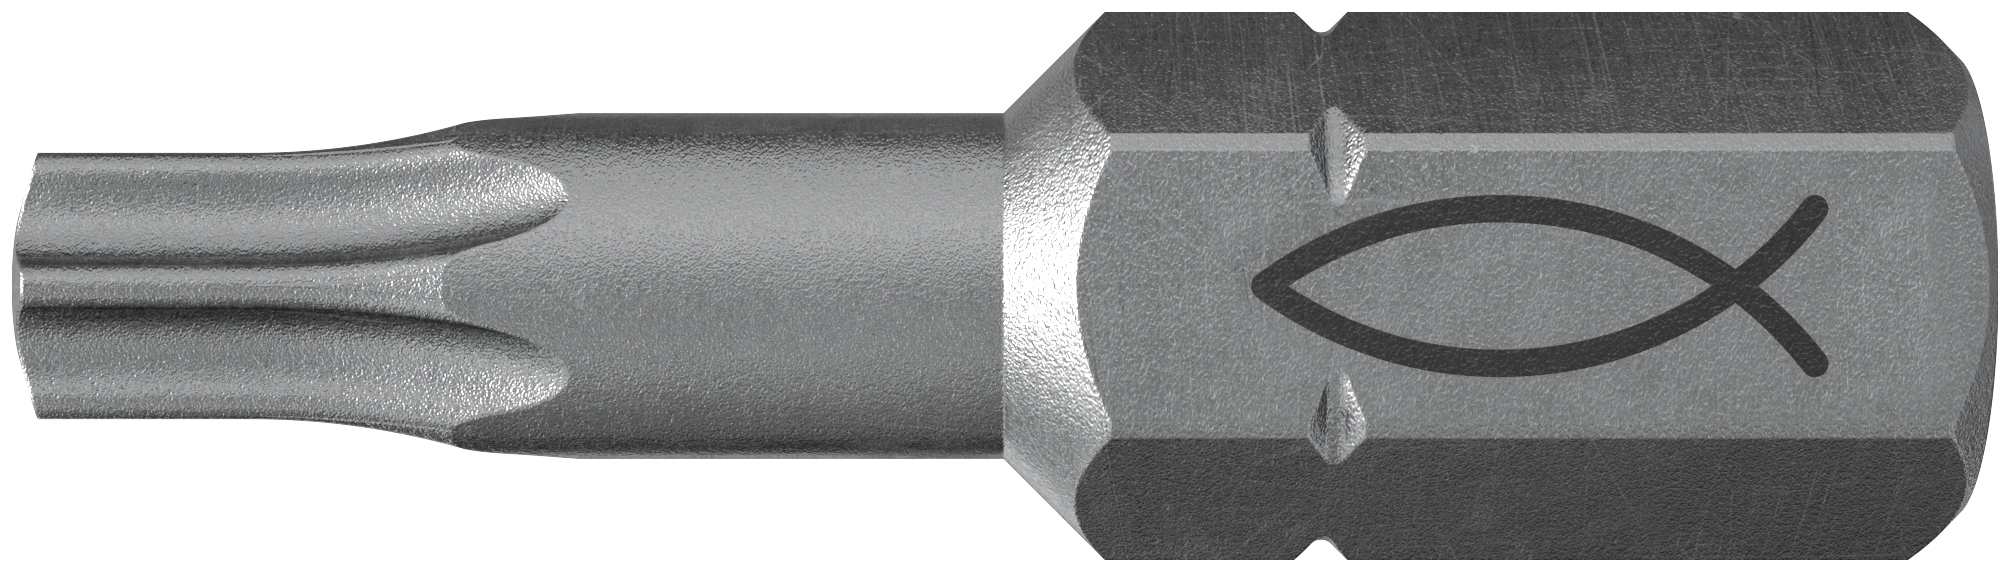 fischer Inserto per avvitatore FPB T 25 PROFI Bit W 10 (10 Pz.) L'inserto per trapano e avvitatore, in acciaio di alta qualit con elevata resistenza all?abrasione per uso professionale fie3767